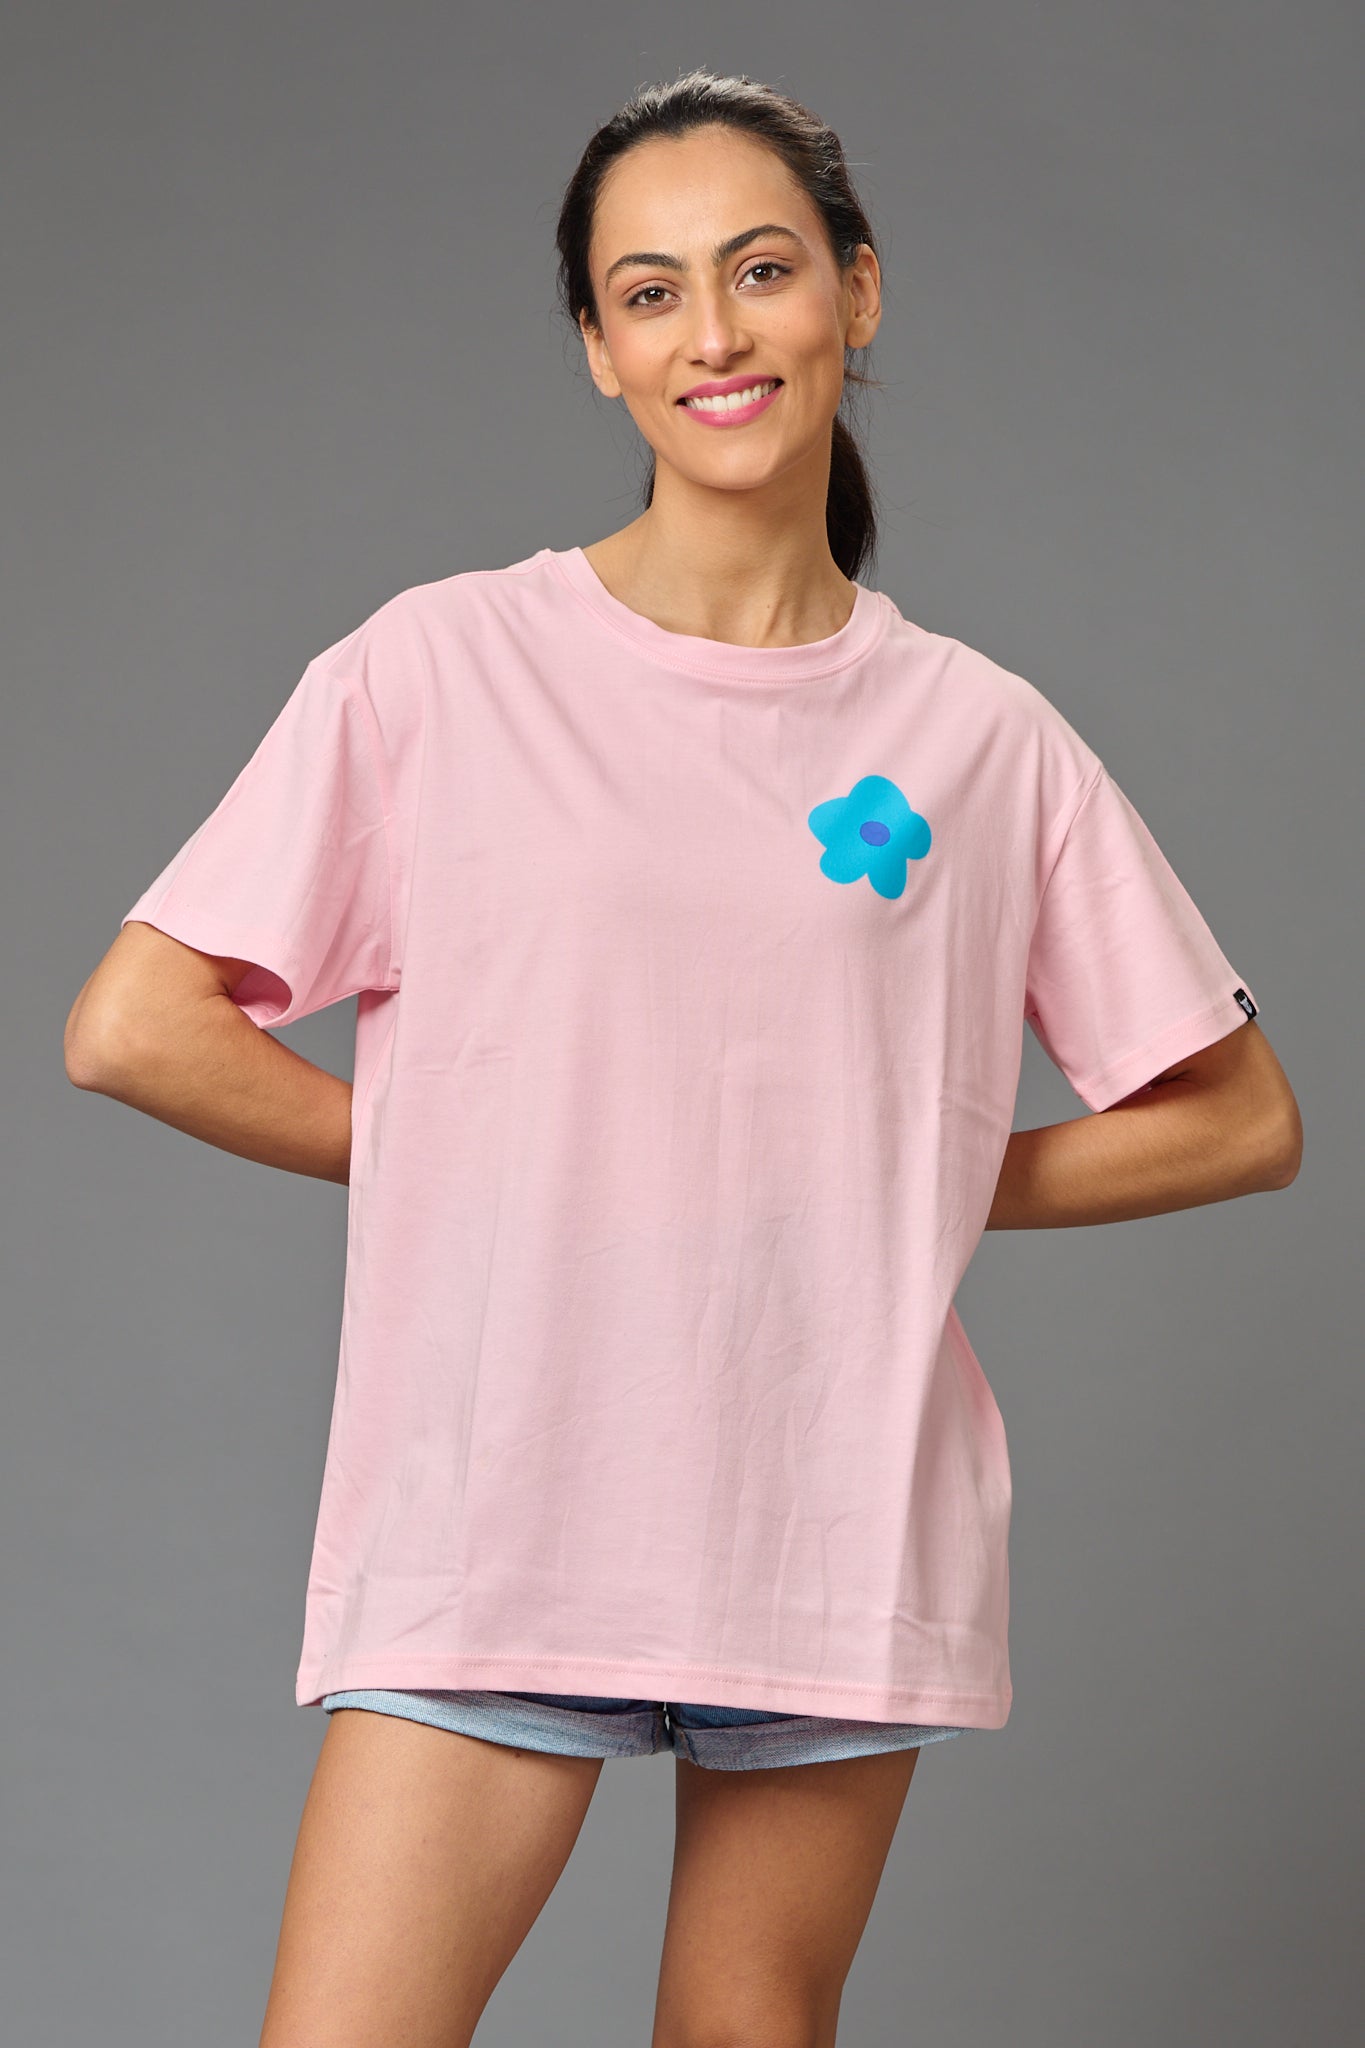 Feel Your Feelings Printed Baby Pink Oversized T-Shirt for Women - Go Devil